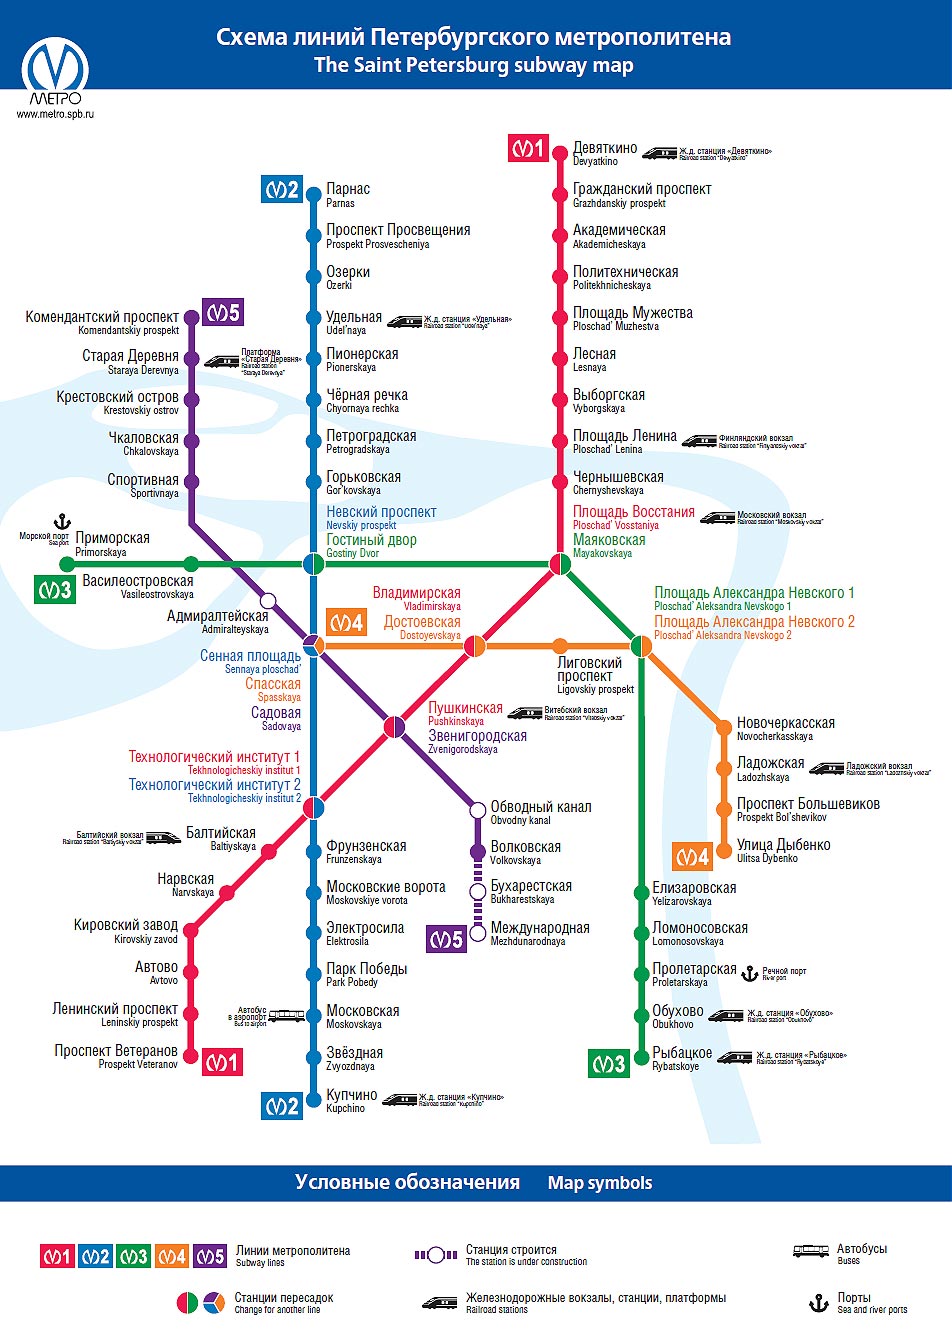 карта станция метро санкт петербург